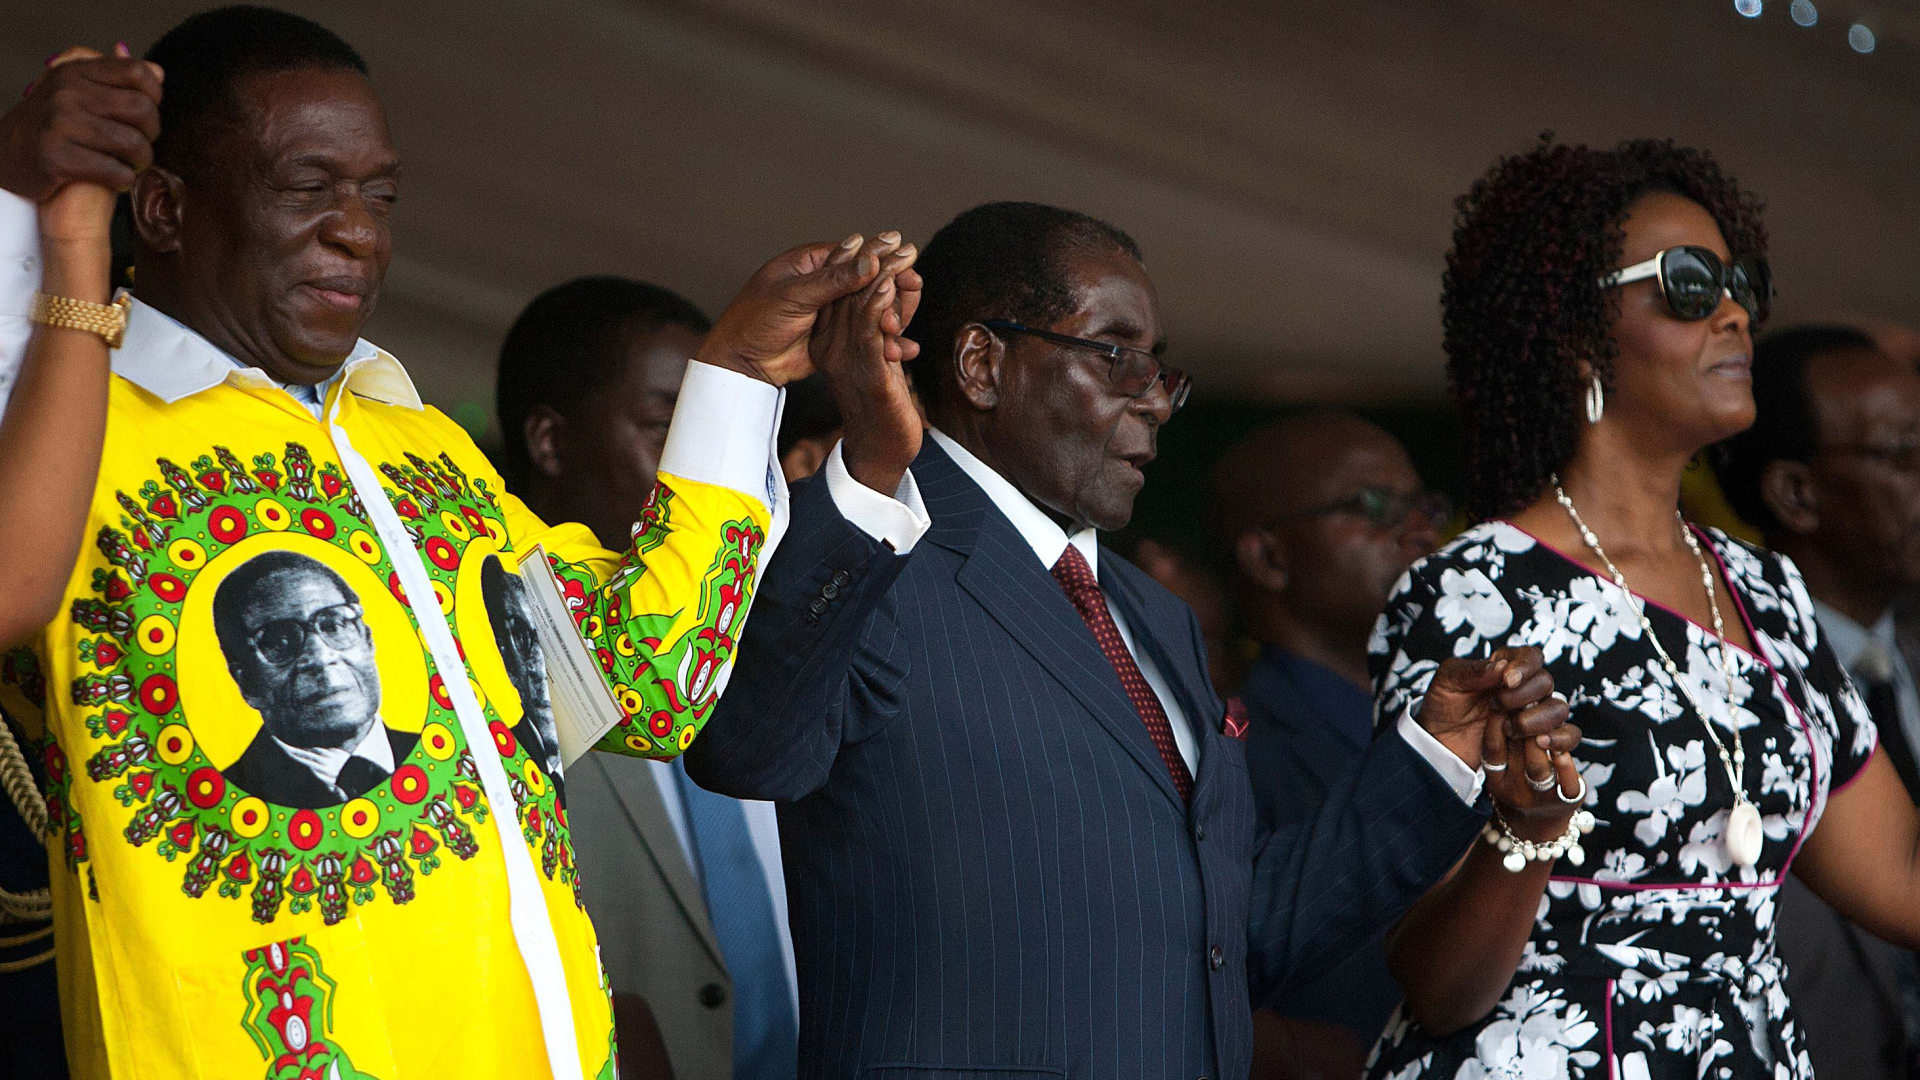 رئيس زمبابوي في حفل عيد ميلاده الـ92 المكلف 800 ألف دولار: أبذل قصارى جهدي لتغذية شعبي